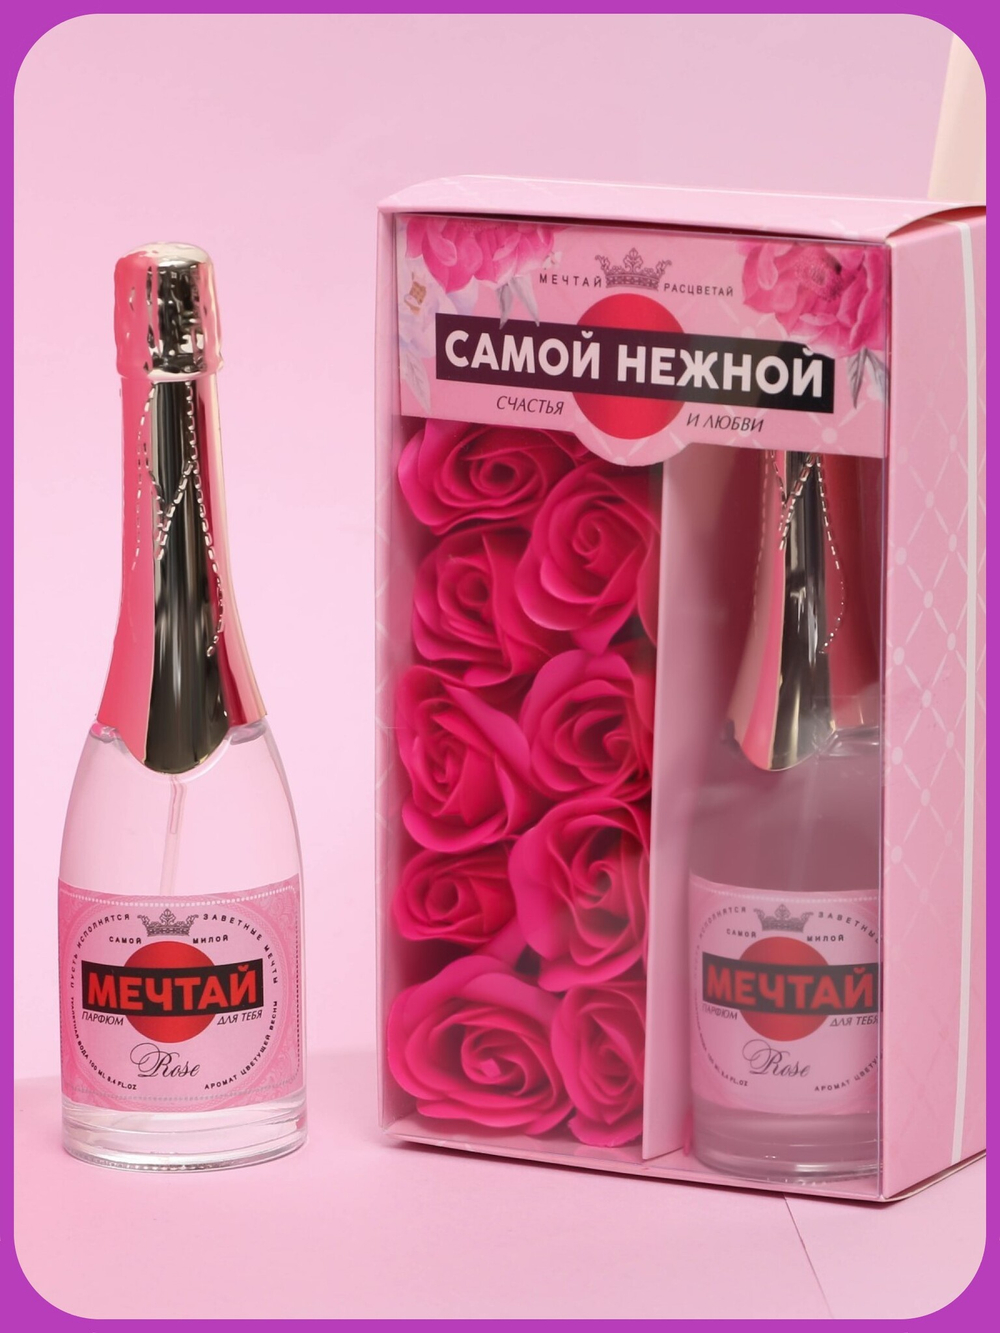 Набор Самой нежной: парфюм шампанское (100 мл), мыльные лепестки (розы)